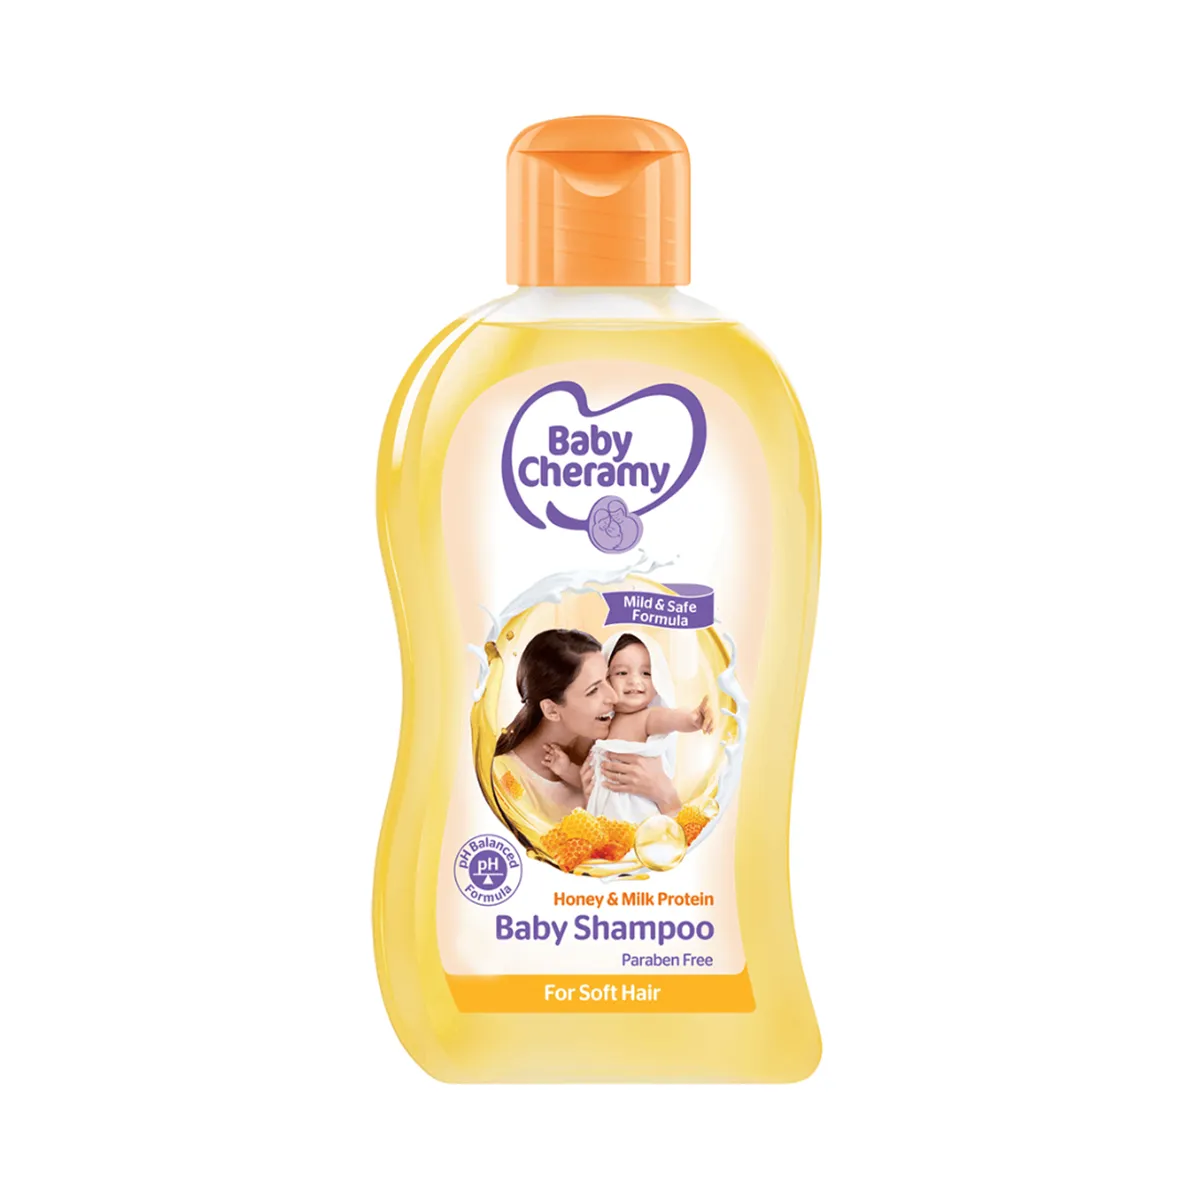 Baby Cheramy Honey & Milk Protein Shampoo 200ml